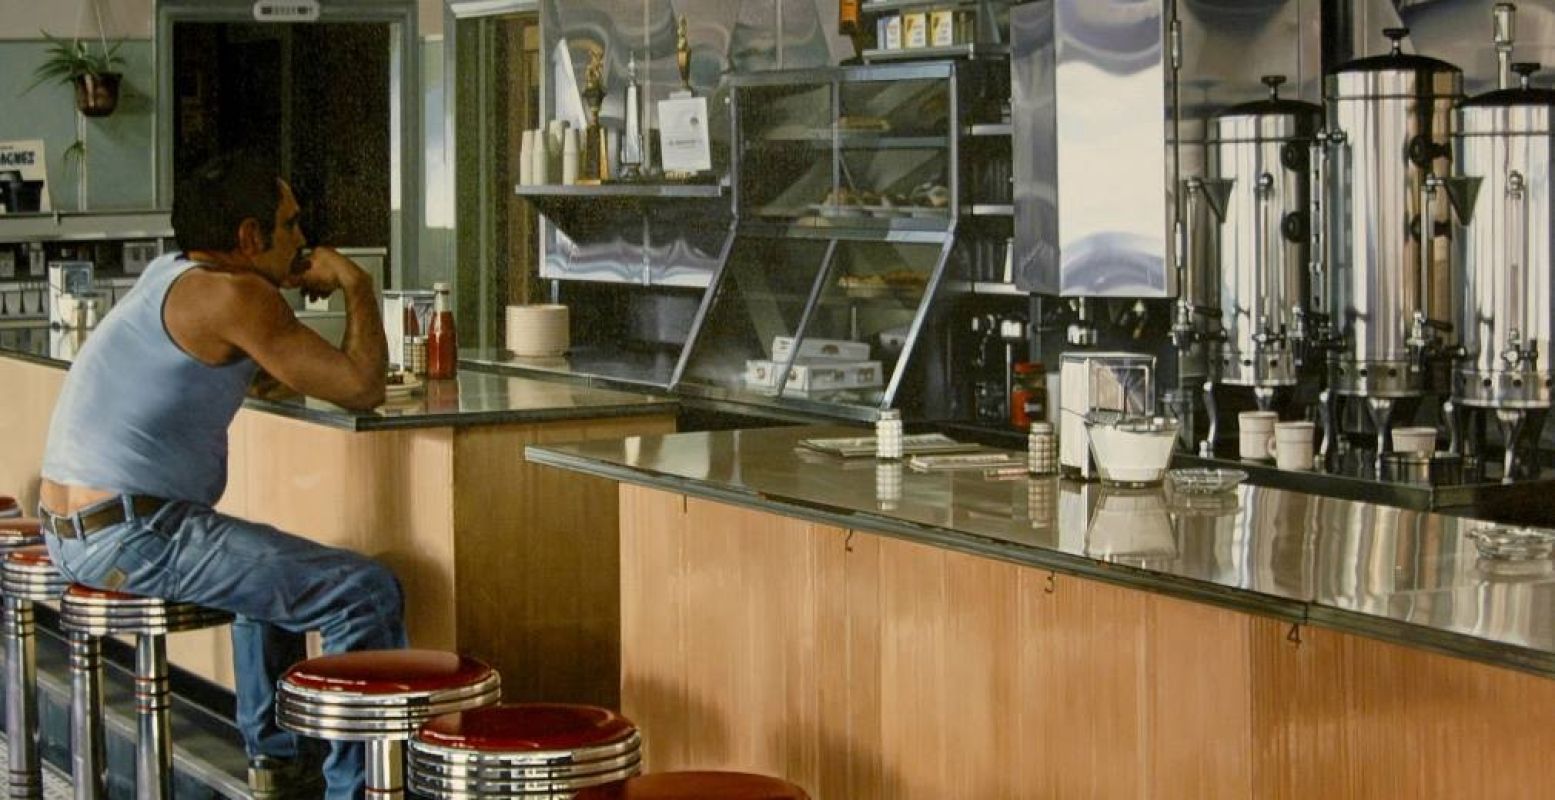 Het schilderij  Amsterdam Diner , gemaakt in 1980 door Ralph Goings en te zien in het Drents Museum. Foto: Courtesy of Louis K. & Susan P. Meisel, New York Courtesy: The estate of Ralph Goings